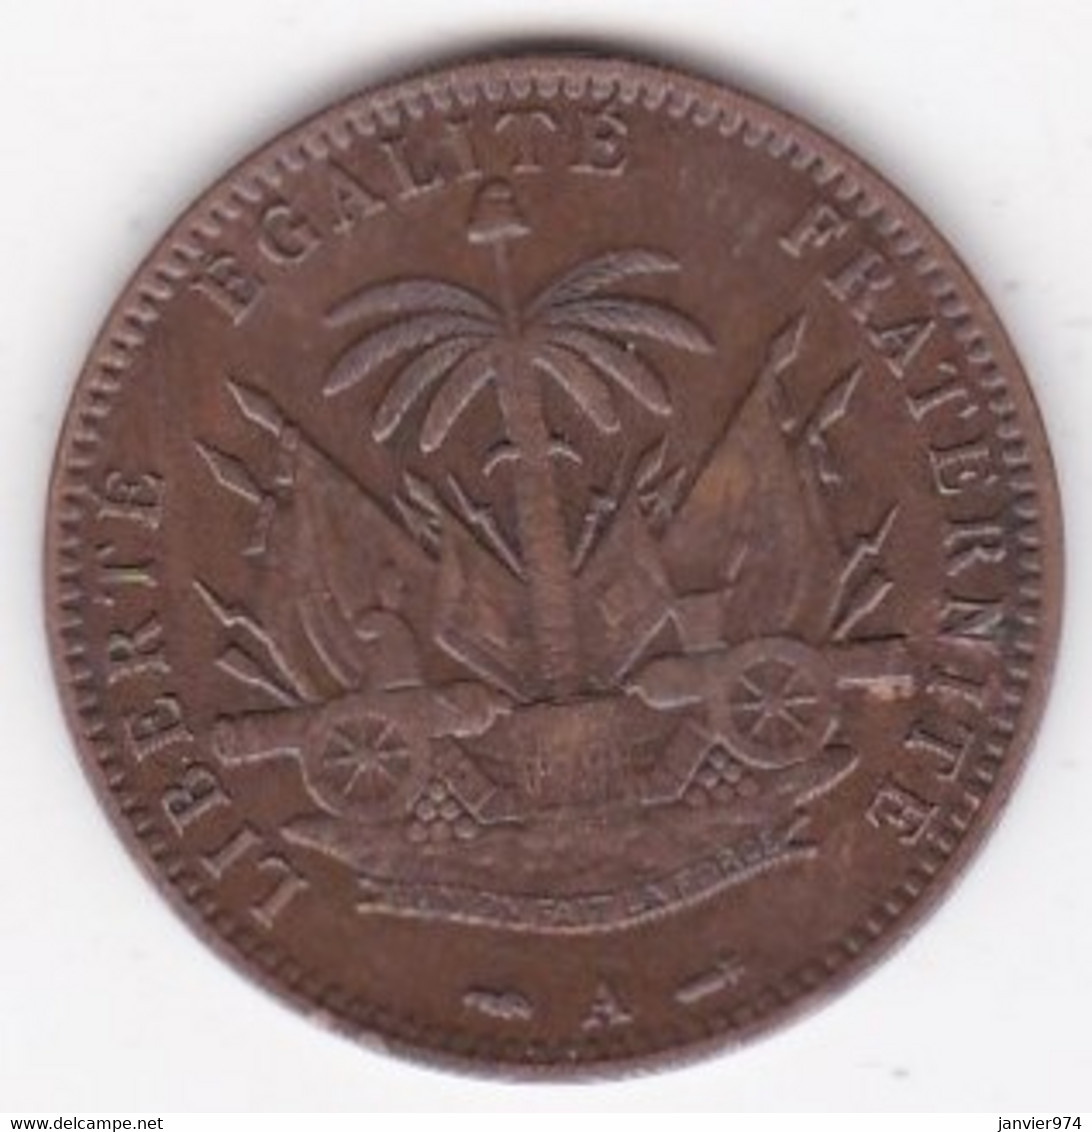 REPUBLIQUE D'HAITI. 1 CENTIME 1886 Paris AN 83. BRONZE .KM# 48 - Haití